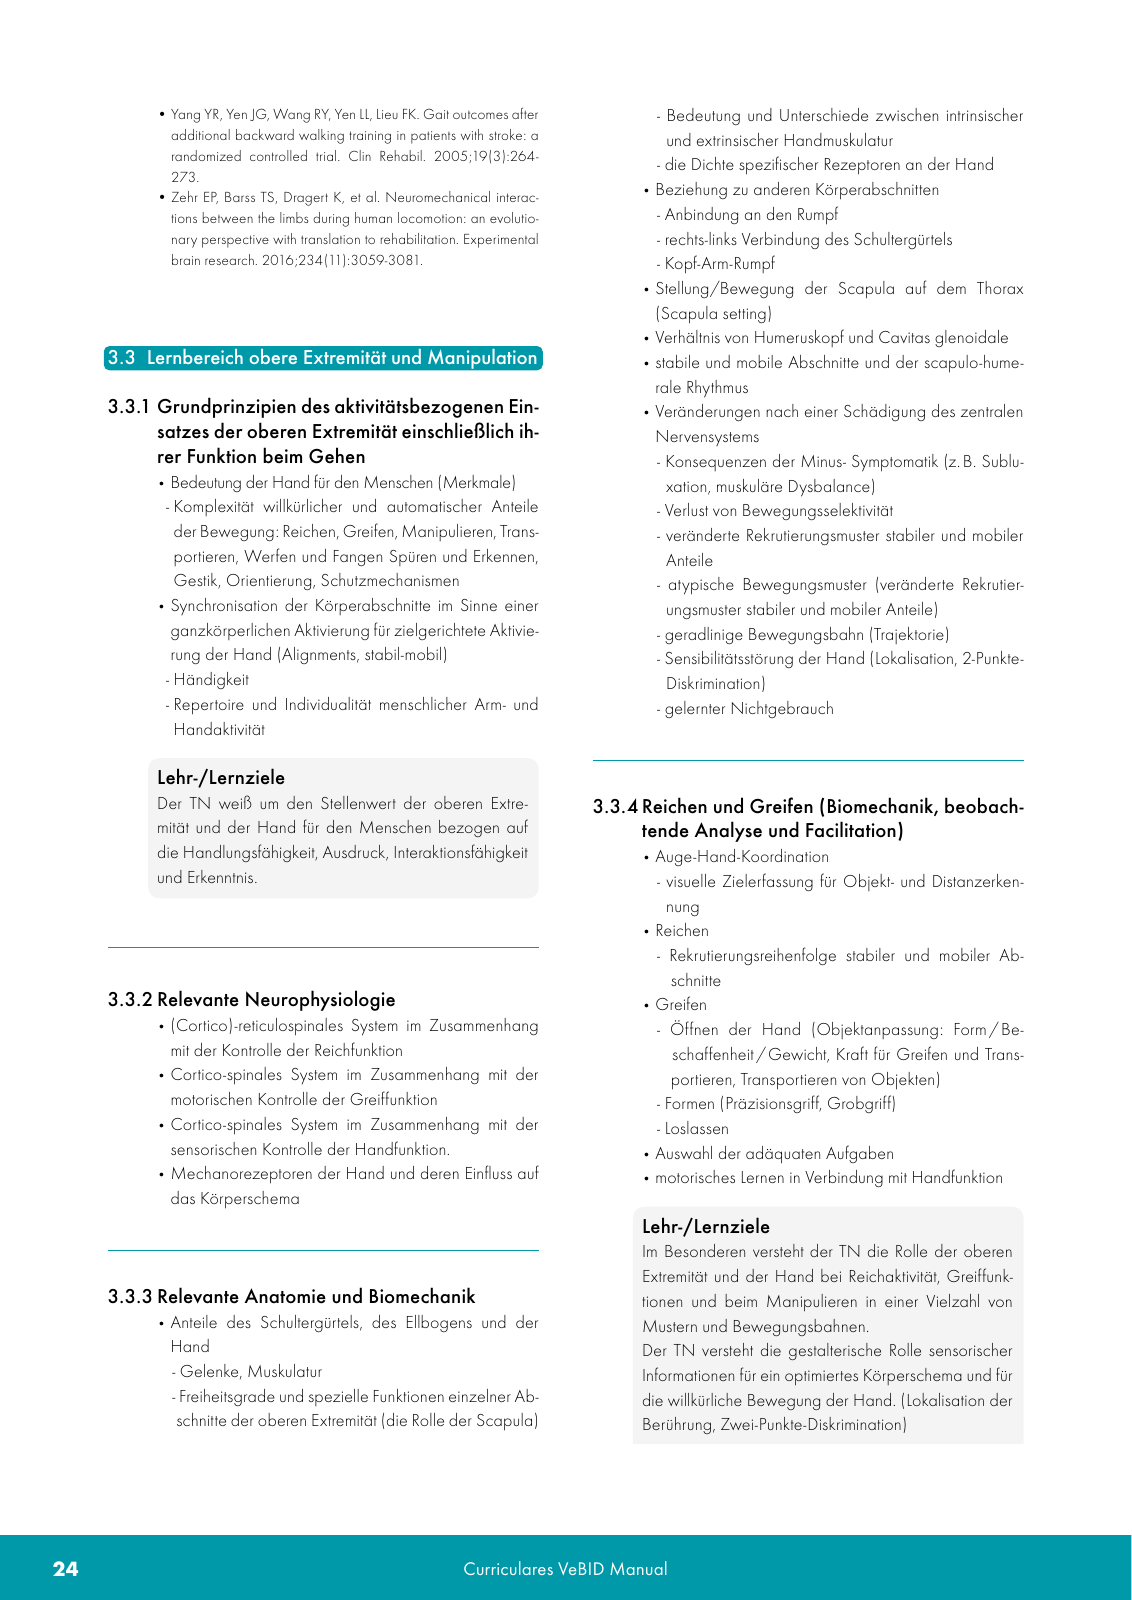 Vorschau VeBID Curriculum 2022 Seite 24